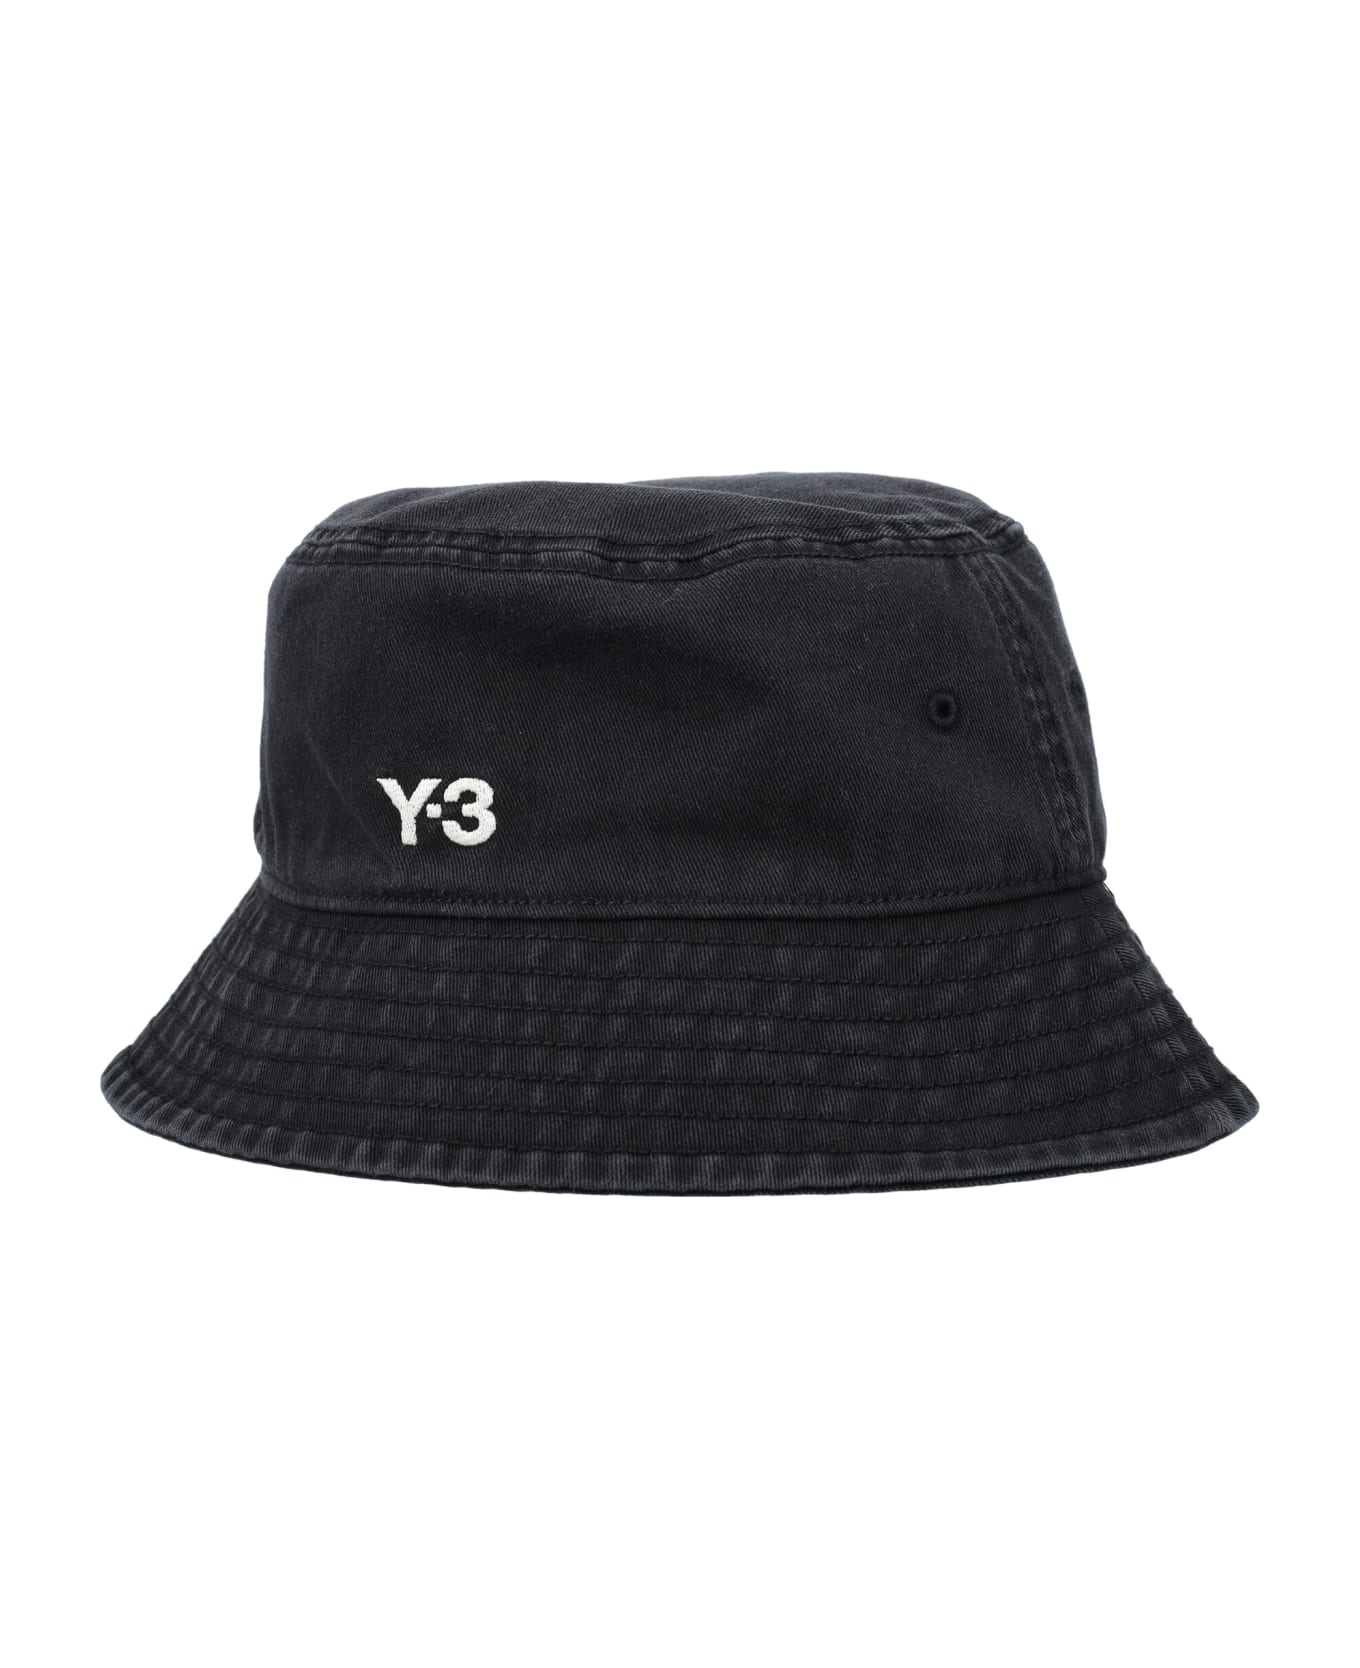 Y-3 Bucket Hat - BLACK 帽子